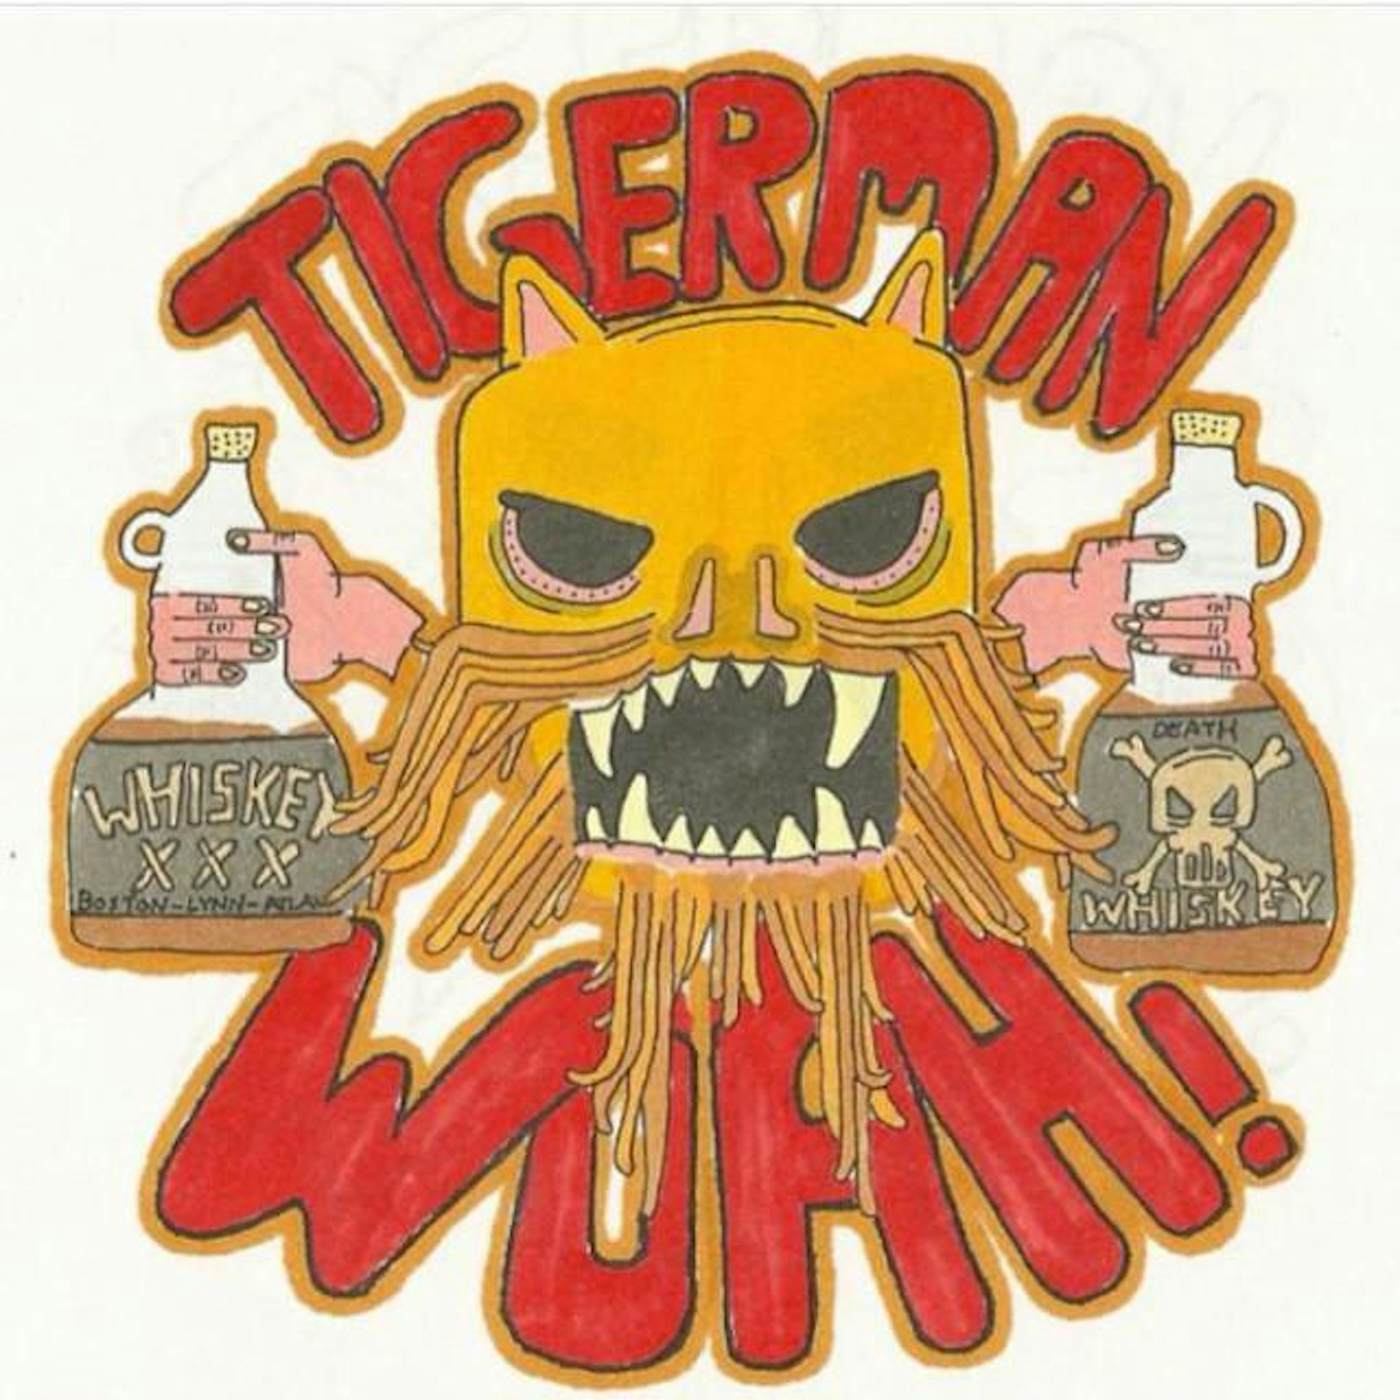 Tigerman Woah!